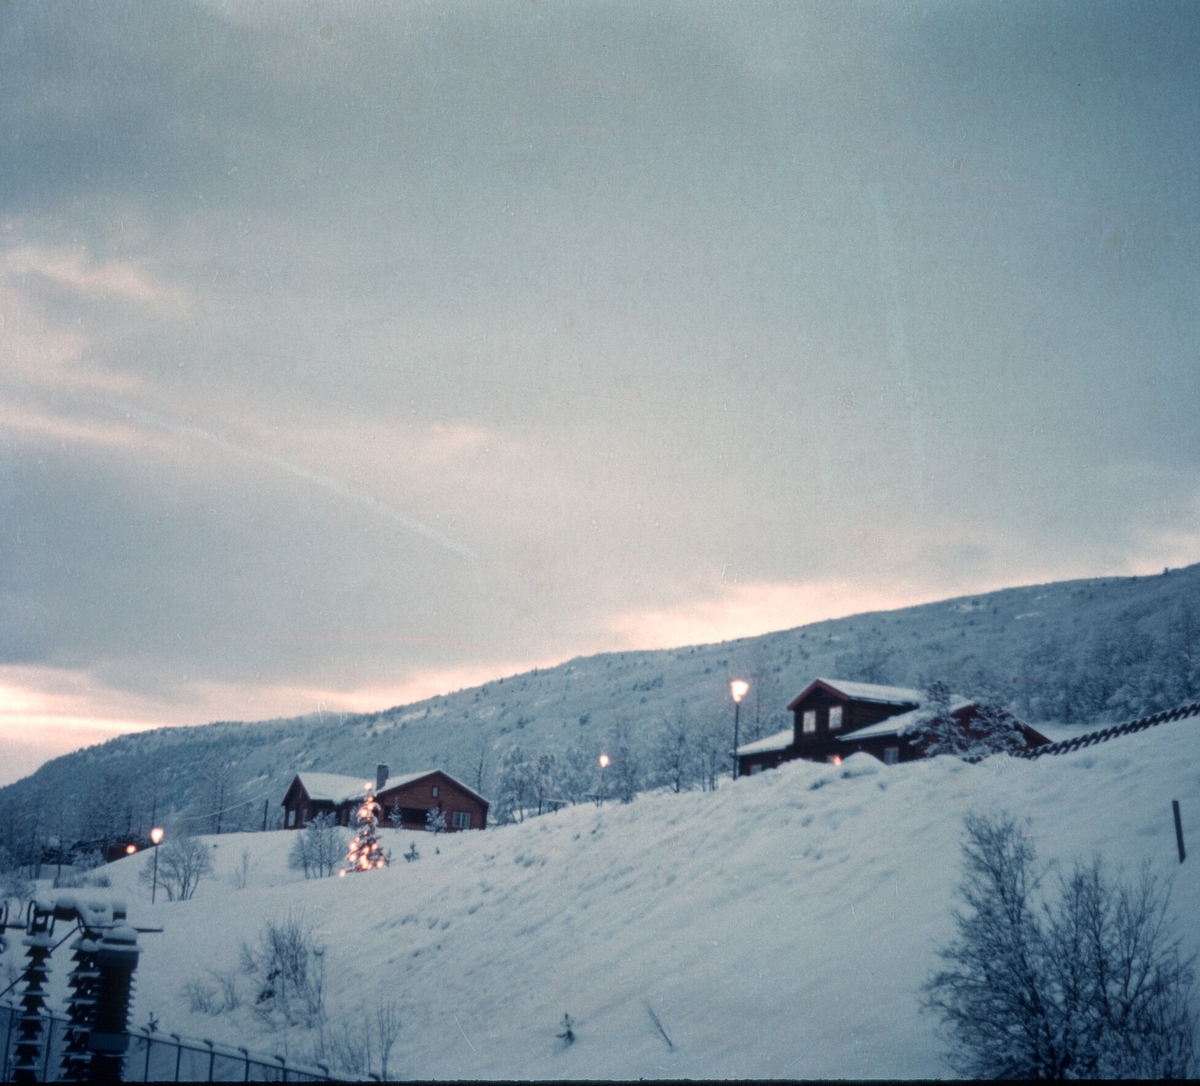 Julestemning ved boliger Hil 1 Rud.
bilde er tatt av Thorbjørn Pedersen.